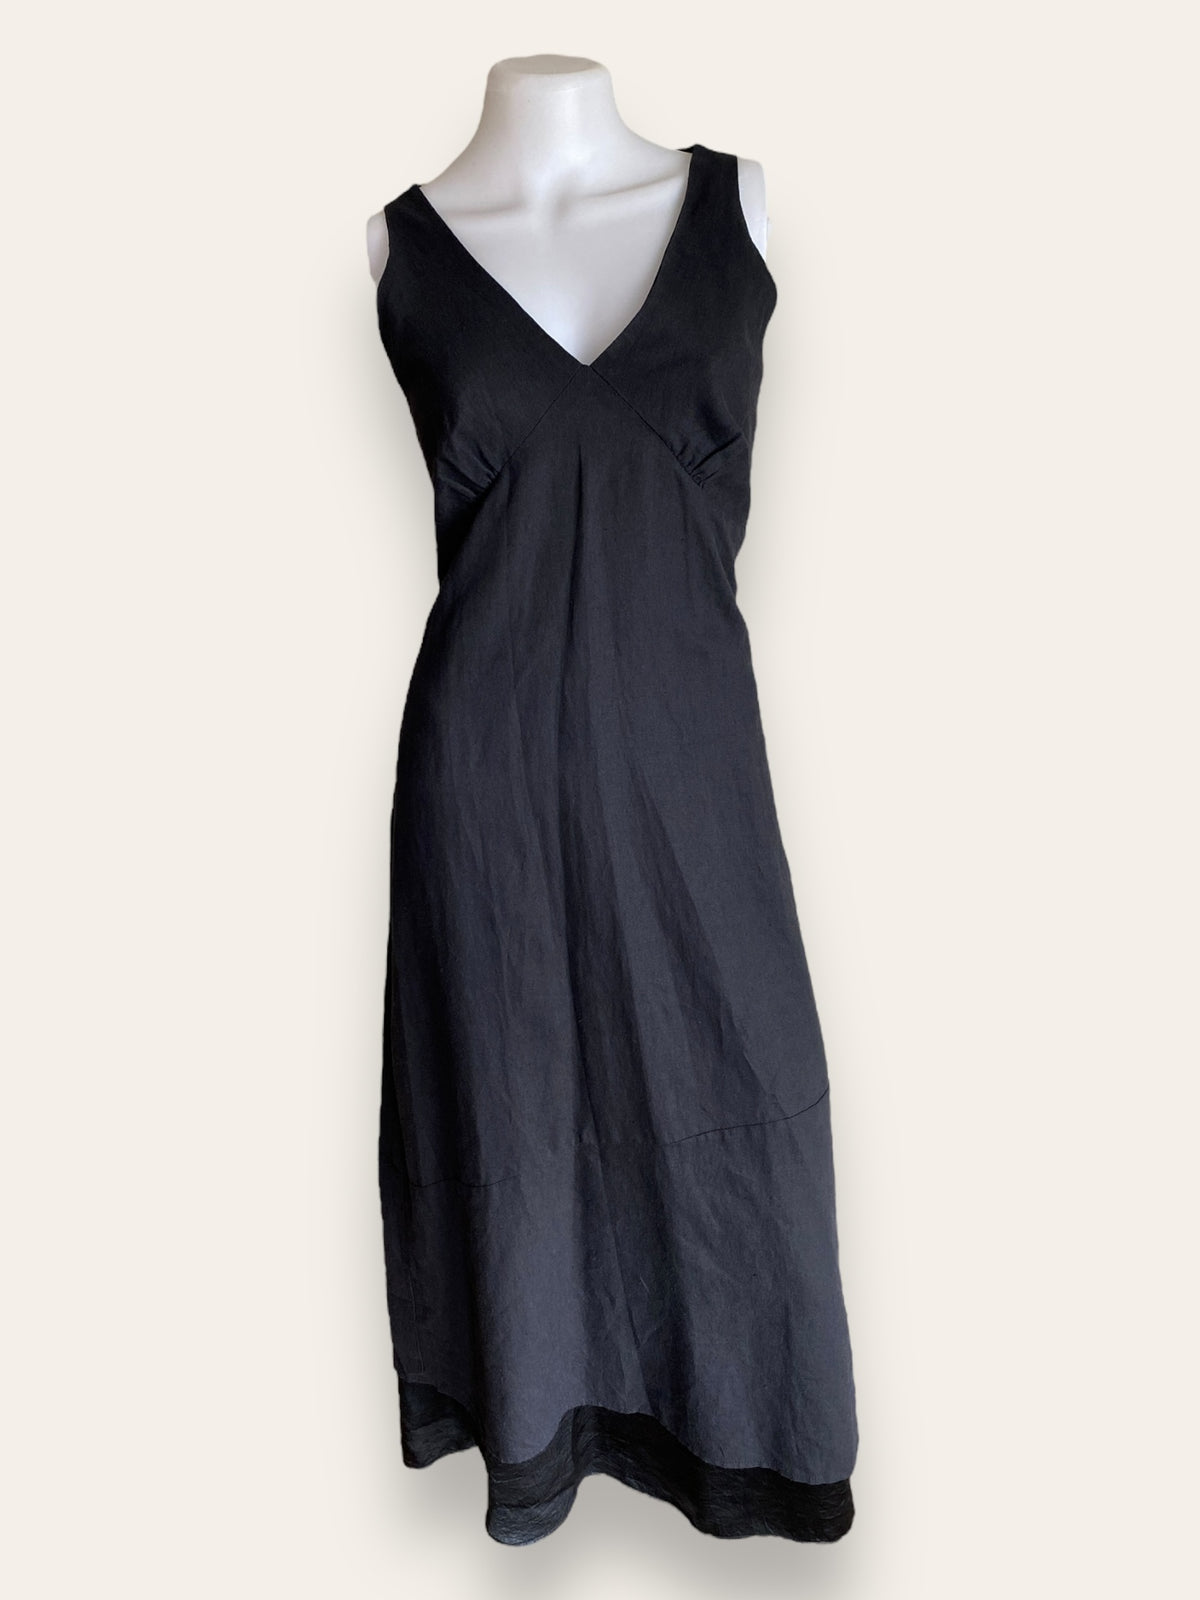 Sally Moinet black sleeveless linen dress 36